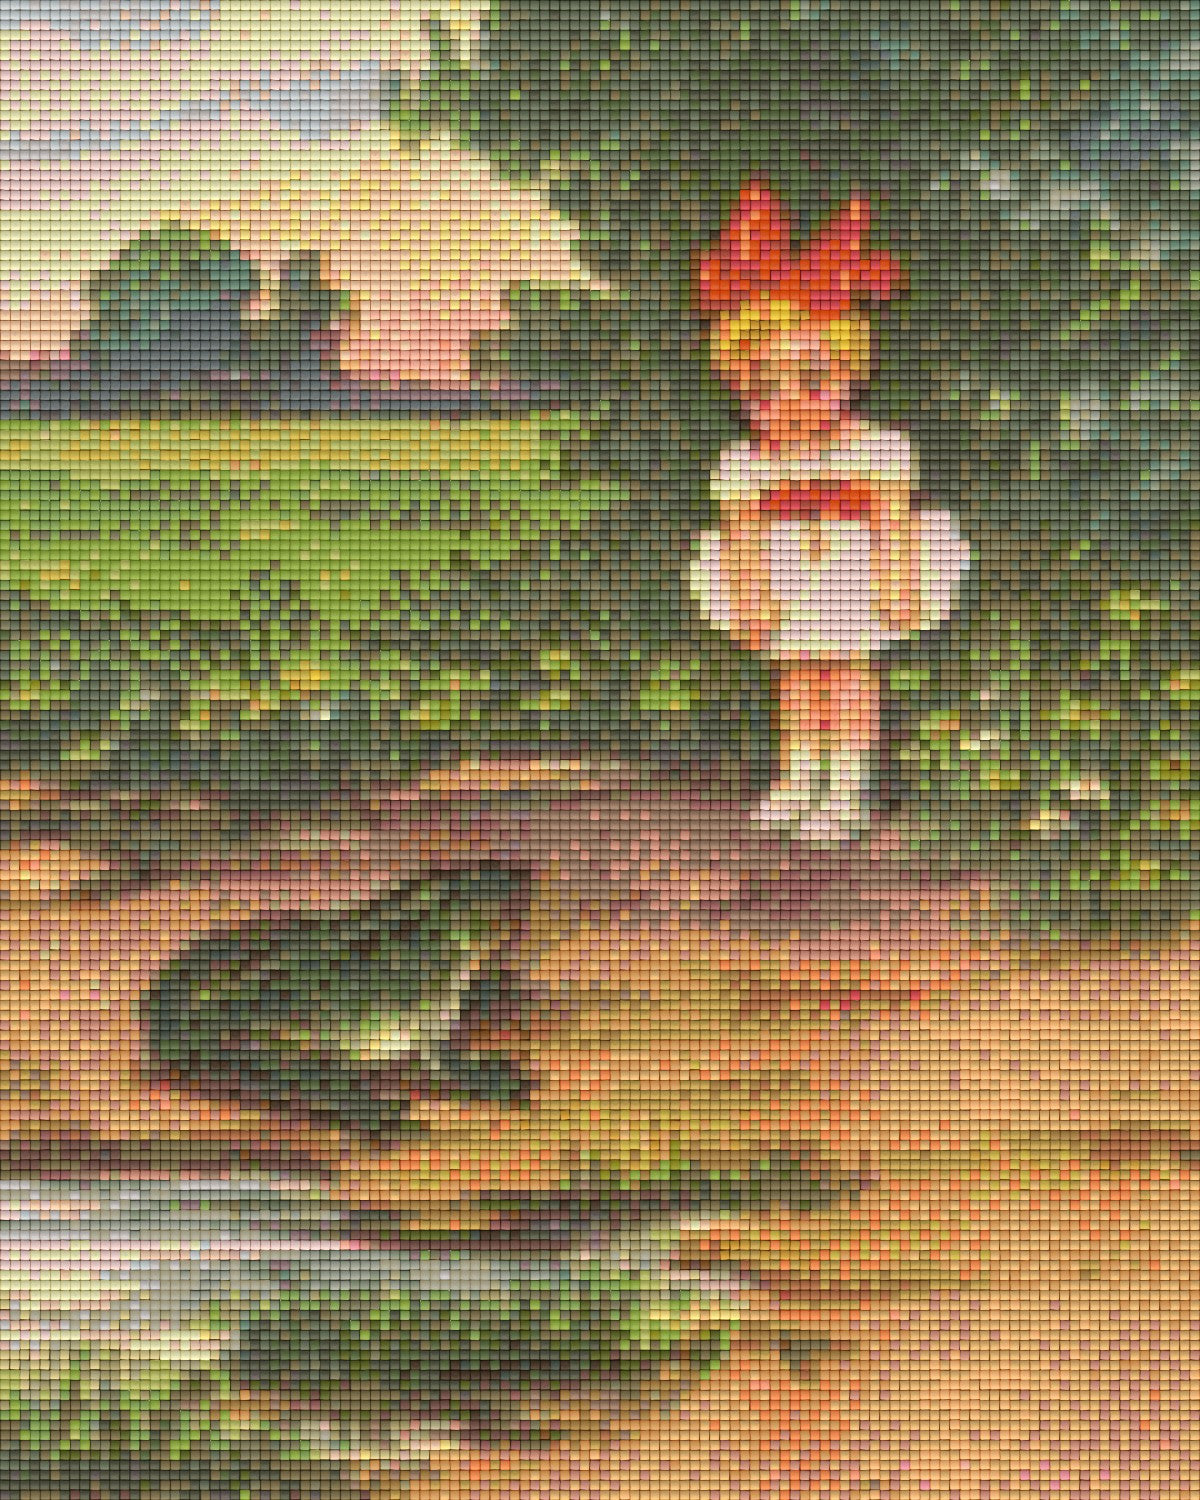 Pixelhobby Klassik Vorlage - Das Mädchen und der Frosch